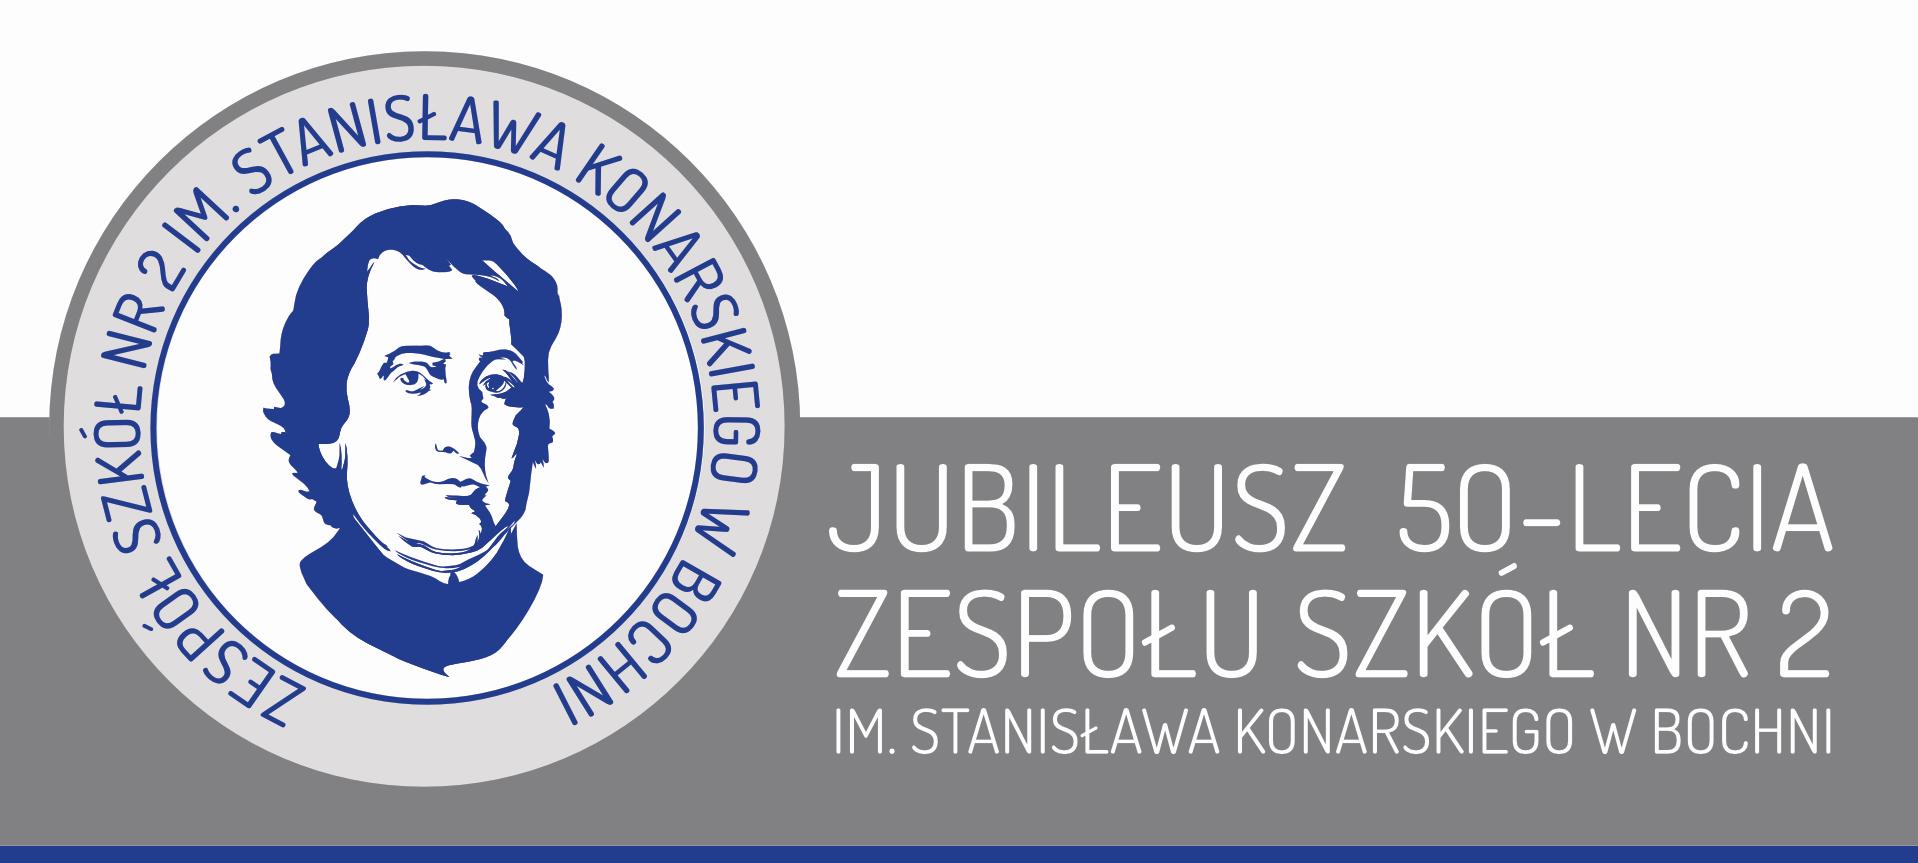 Logo szkoły na tle napisu: Jubileusz 50-lecia Zespołu Szkół nr 2 im. Stanisława Konarskiego w Bochni